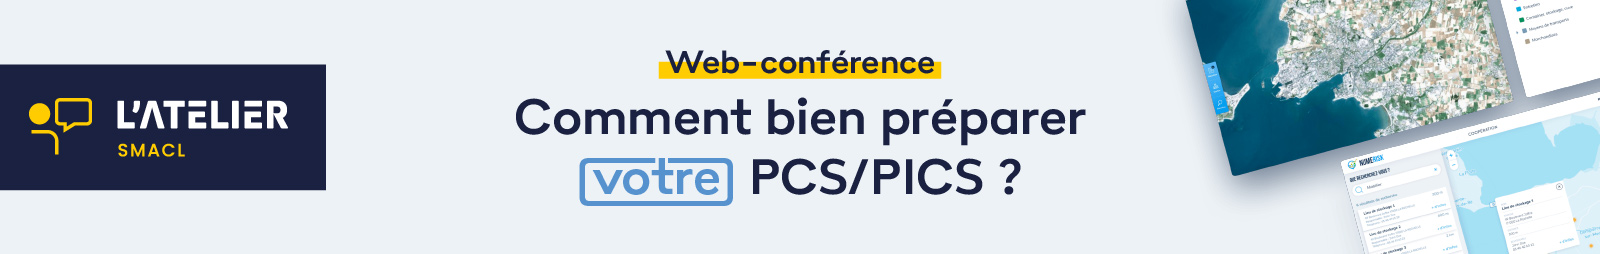 Web-conférence par l'Atelier SMACL : Comment bien préparer votre PCS/PICS ?